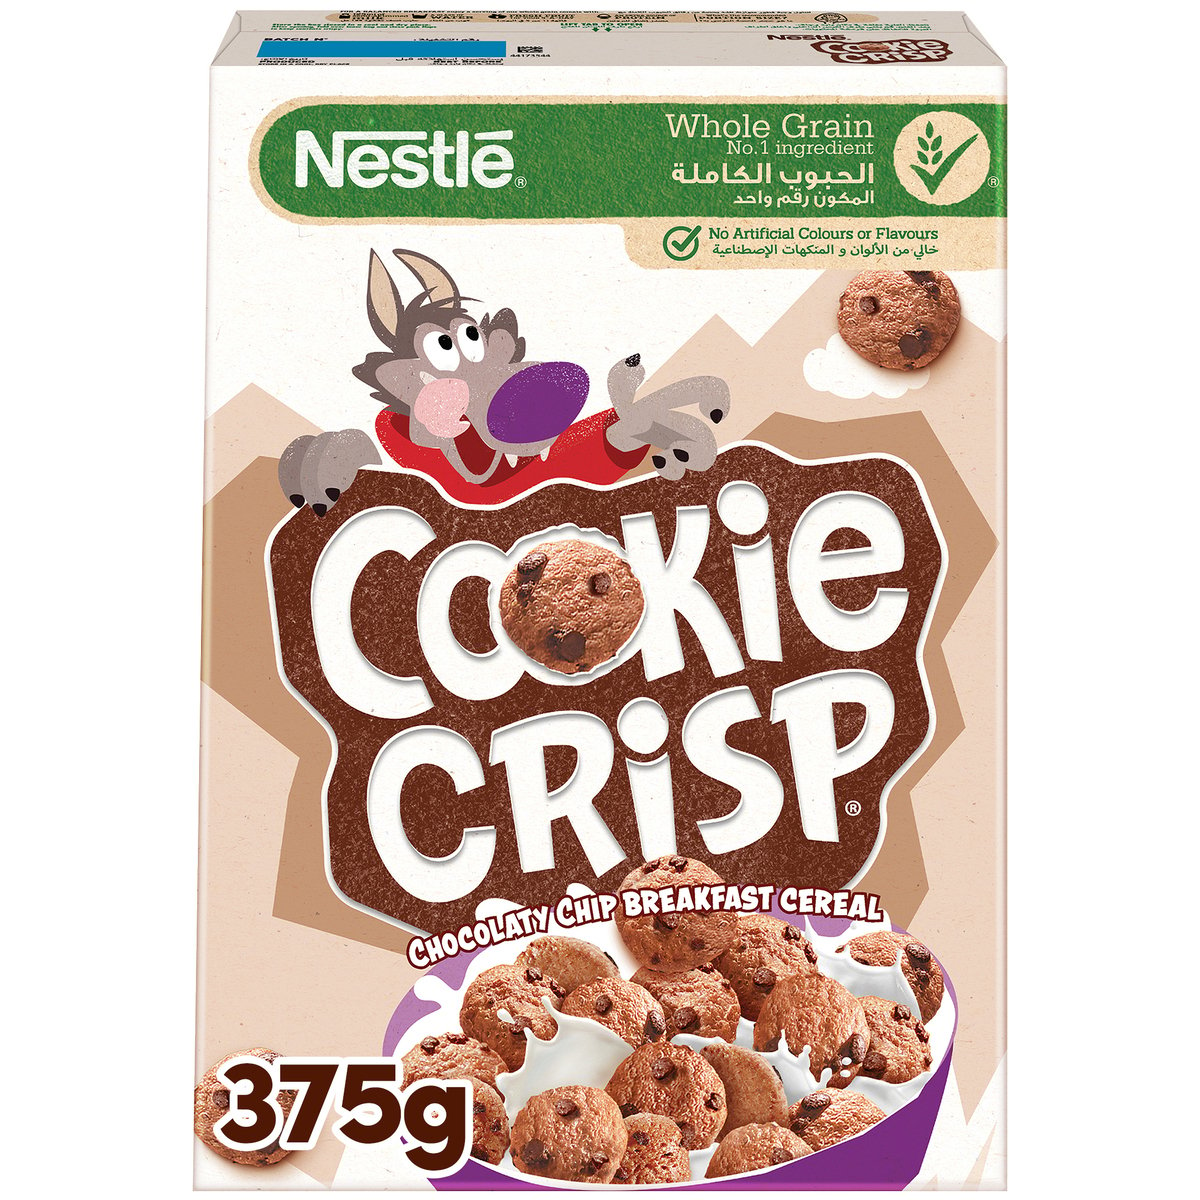 Buy Nestle Cookie Crisp Chocolate Chip Breakfast Cereal 375 g Online at Best Price | Sugar & chocolate cereals | Lulu UAE in UAE